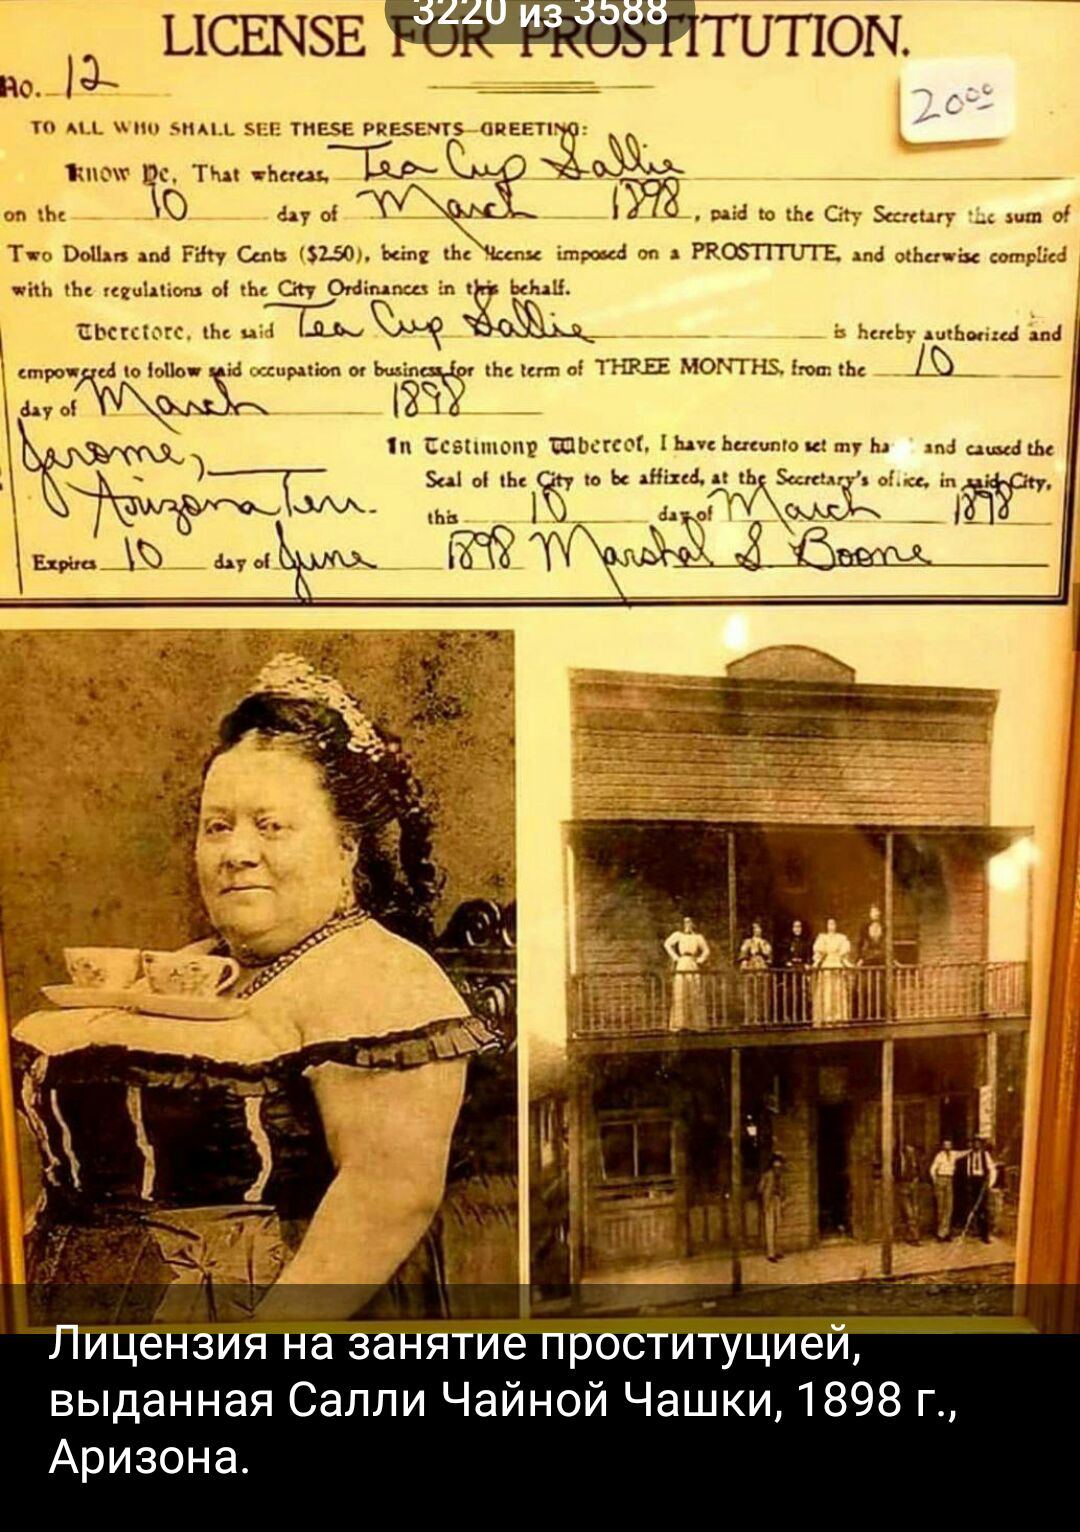 ысшэв типом _ Лицензия на занятие проституцией выданная Саппи Чайной Чашки 1898 г Аризона